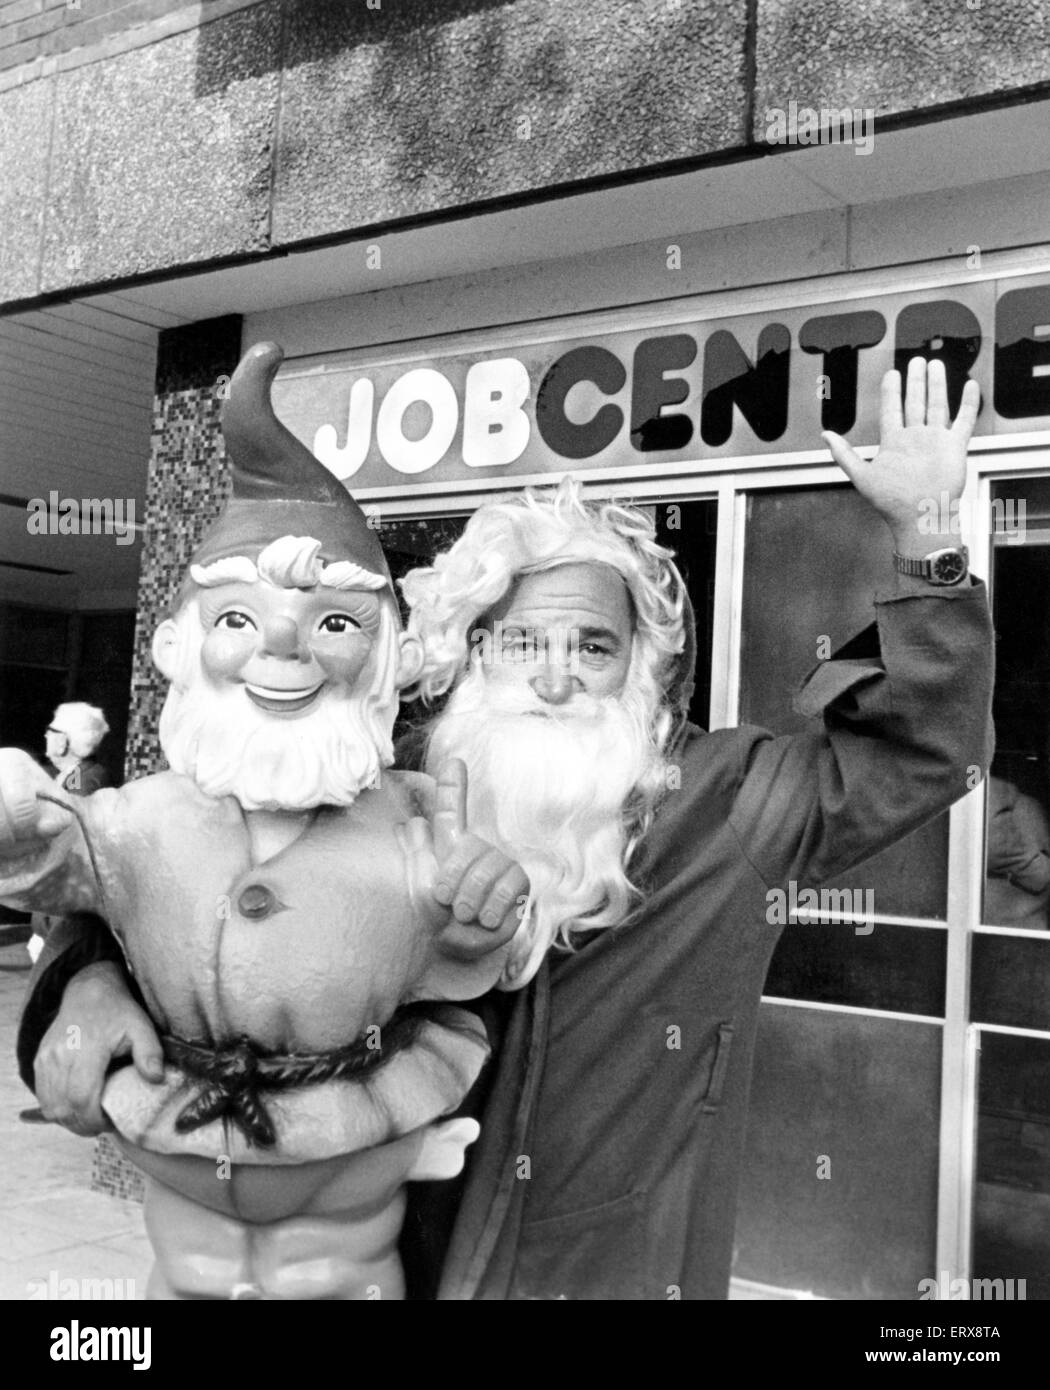 Emploi Jolly hunter Ken Ellis a trouvé un cadeau de Noël à l'attendre dans la colonne d'emploi, il va y avoir un magasin Stockton du Père Noël, le 26 octobre 1982. Banque D'Images